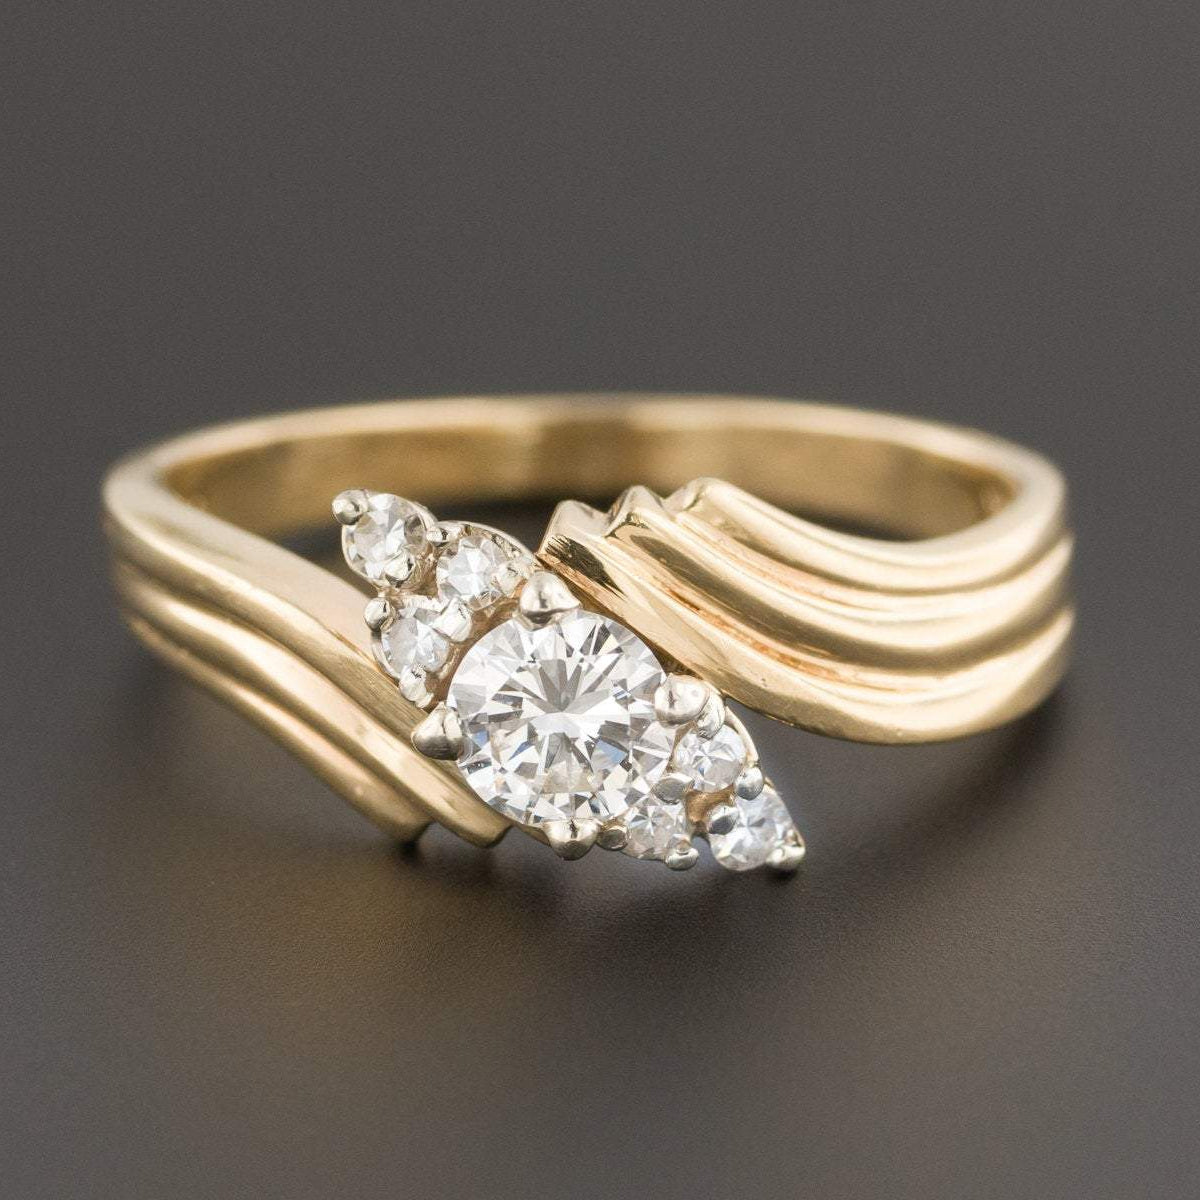 Engagement Ring | Vintage Diamond Ring | Vintage Engagement Ring | 14k Gold Ring | Yellow Gold Engagement Ring | Vintage Ring